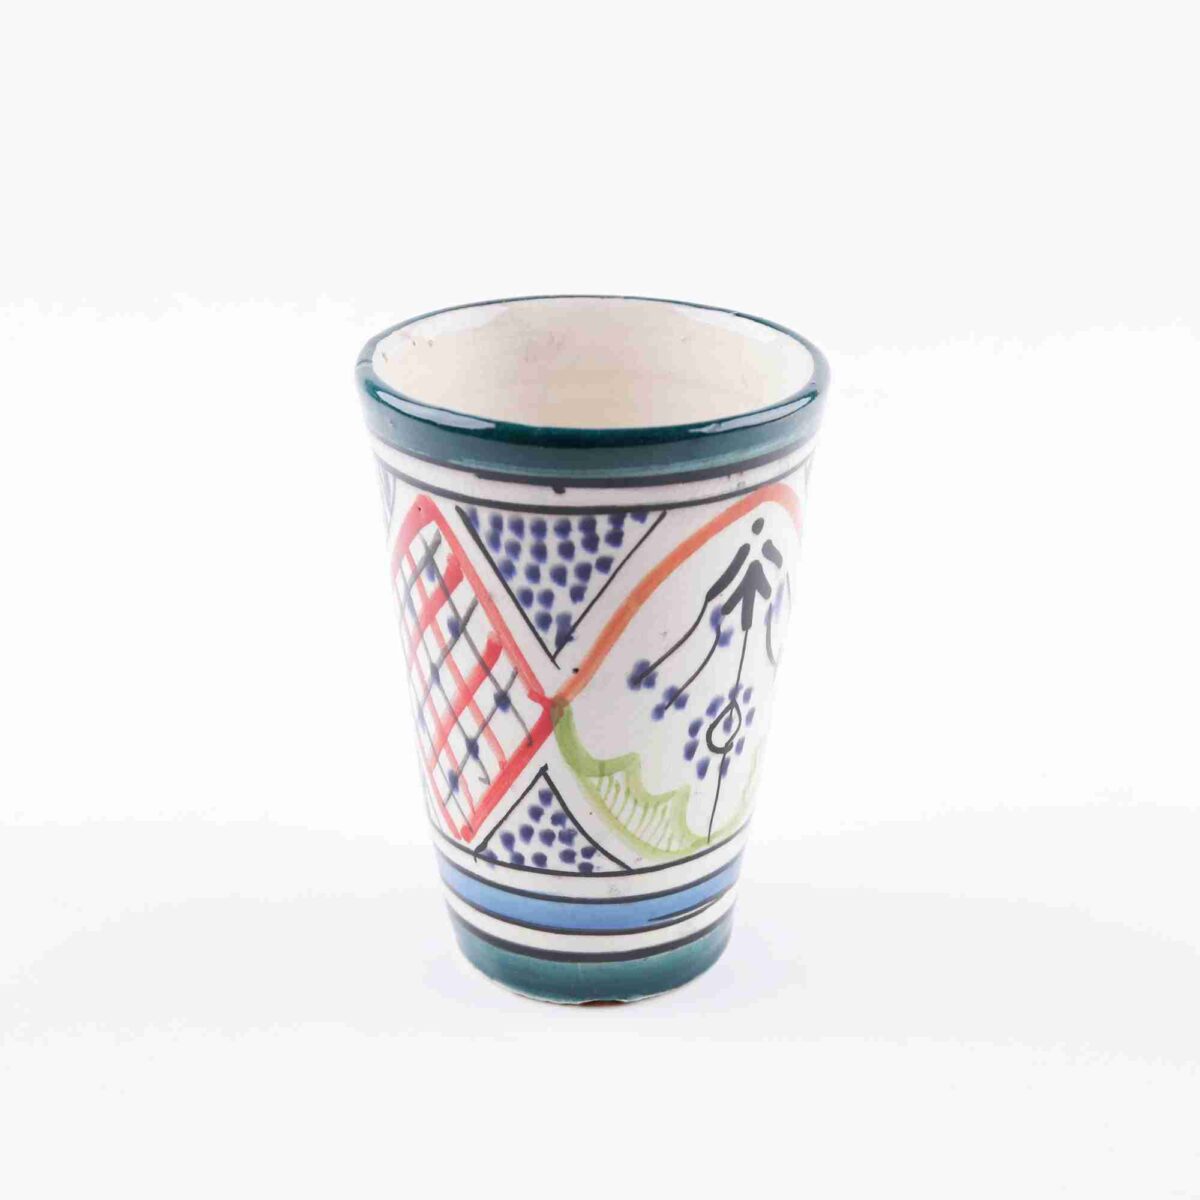 Handmade-Moroccan-coffee-cup